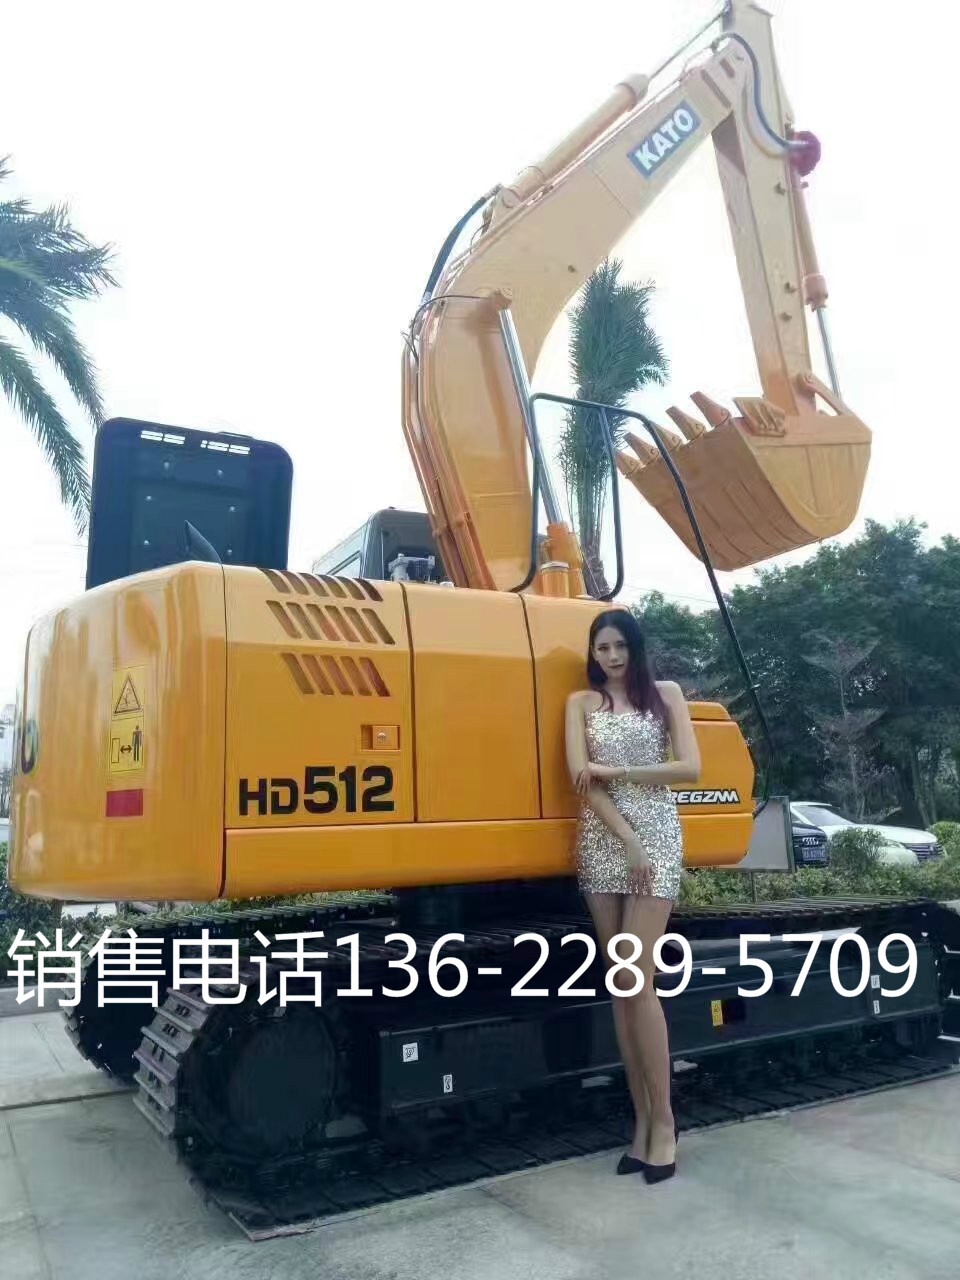 景德镇HD820R挖掘机省油保值销售